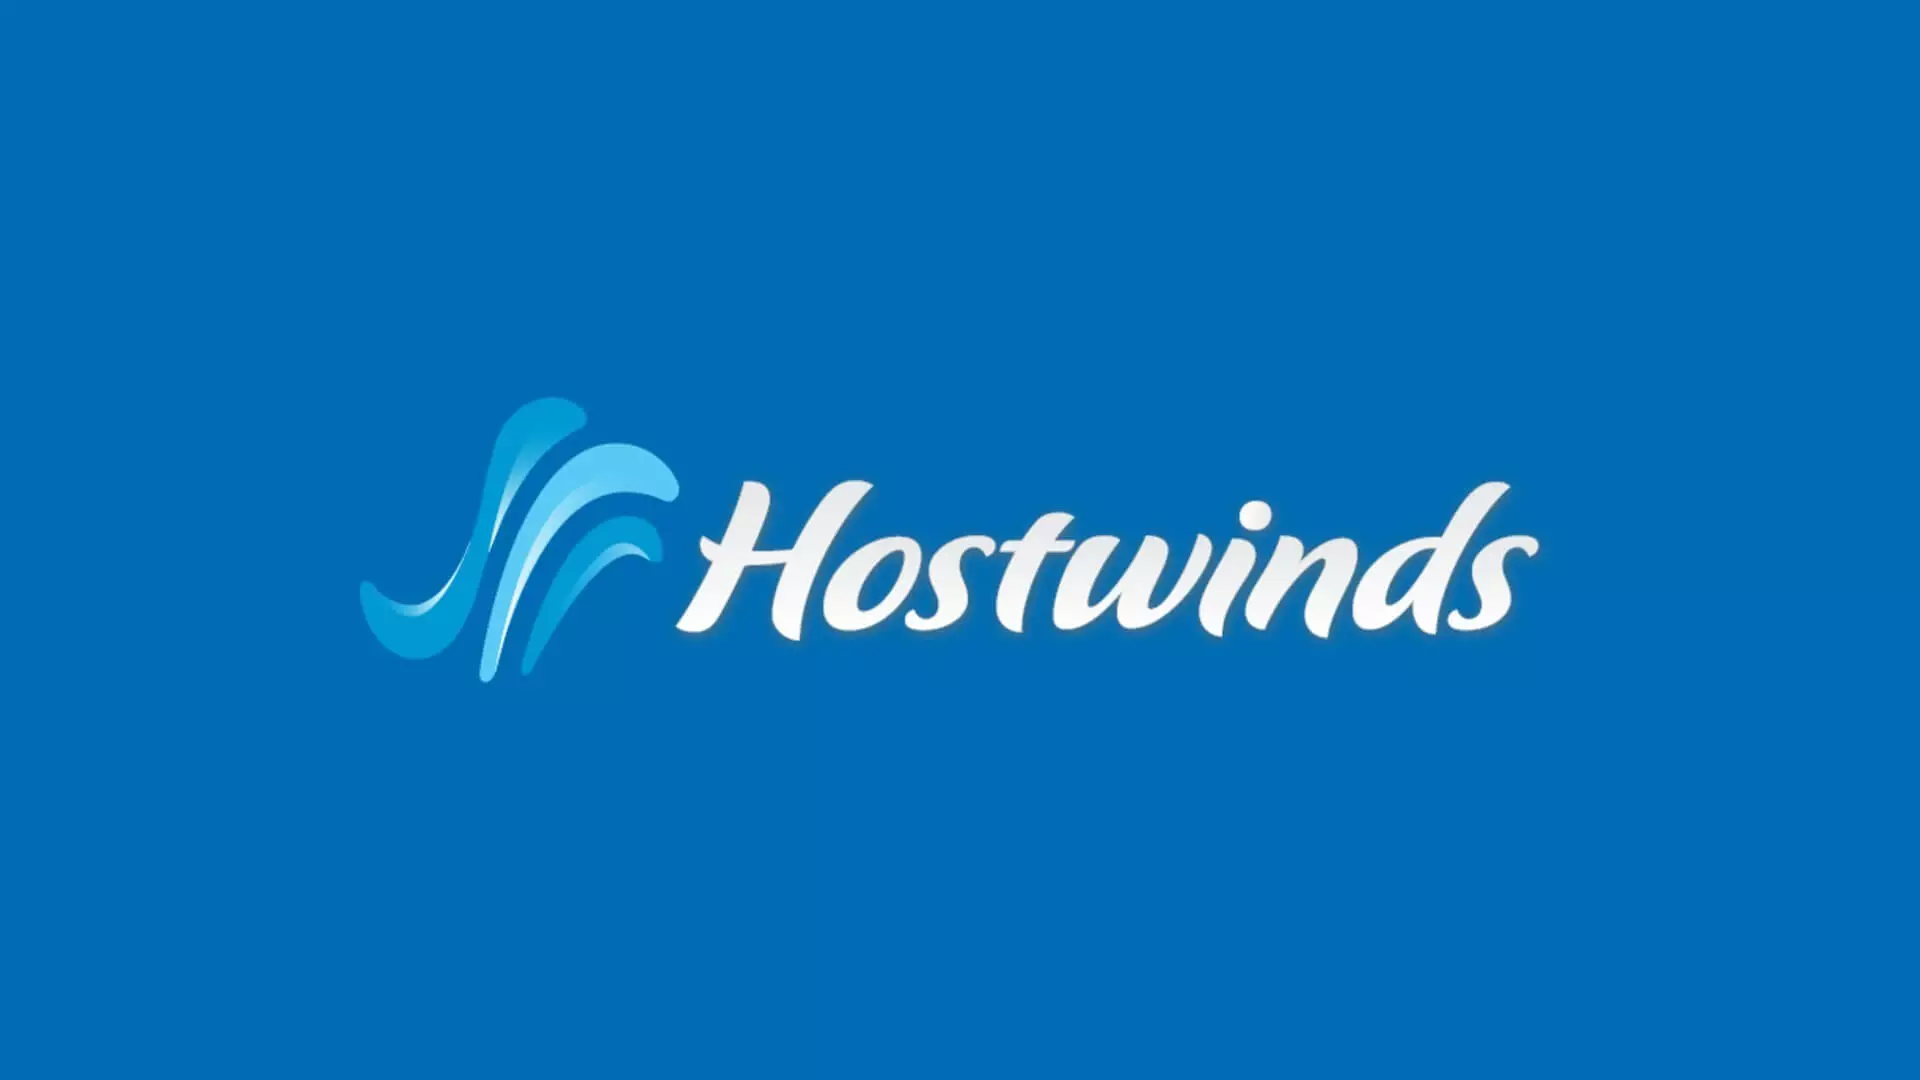 Hostwinds-Web-Hosting-Company